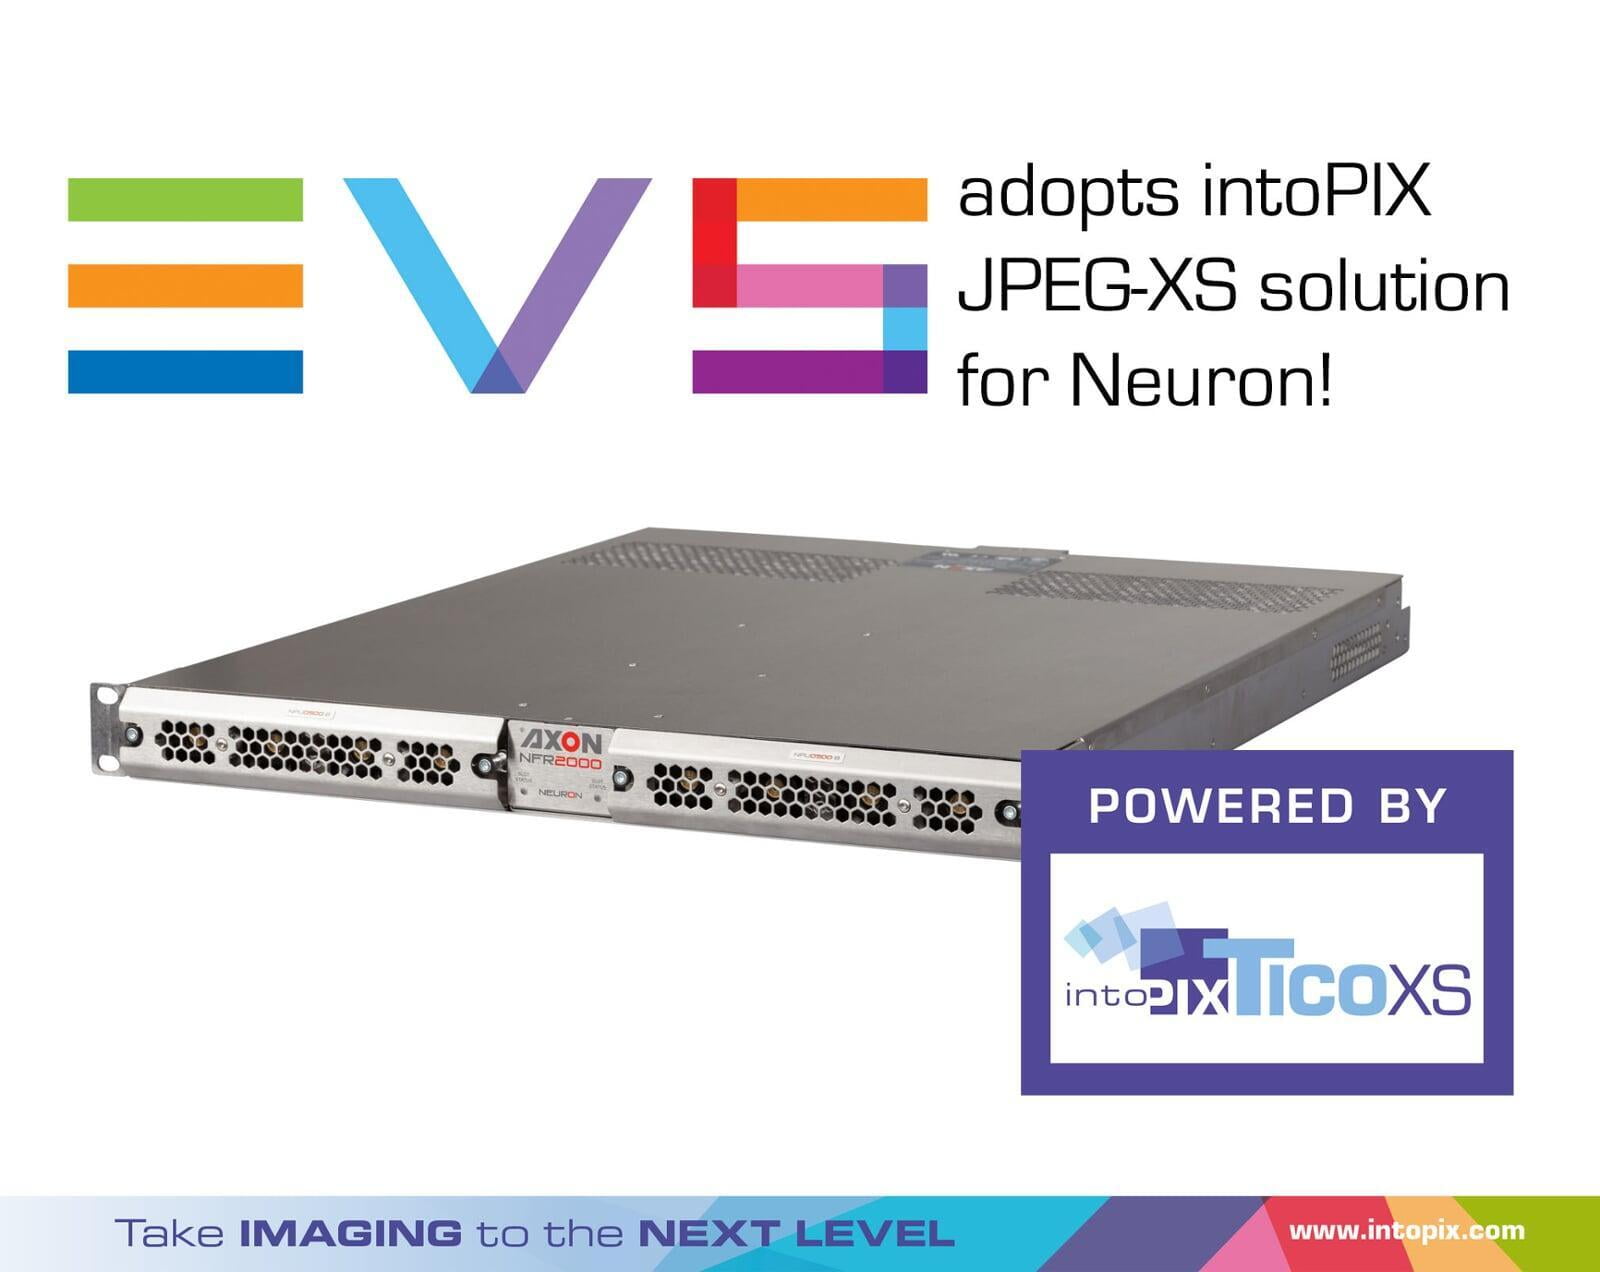 EVS Media Infrastructure adopte la solution JPEG XS d'intoPIX pour Neuron 